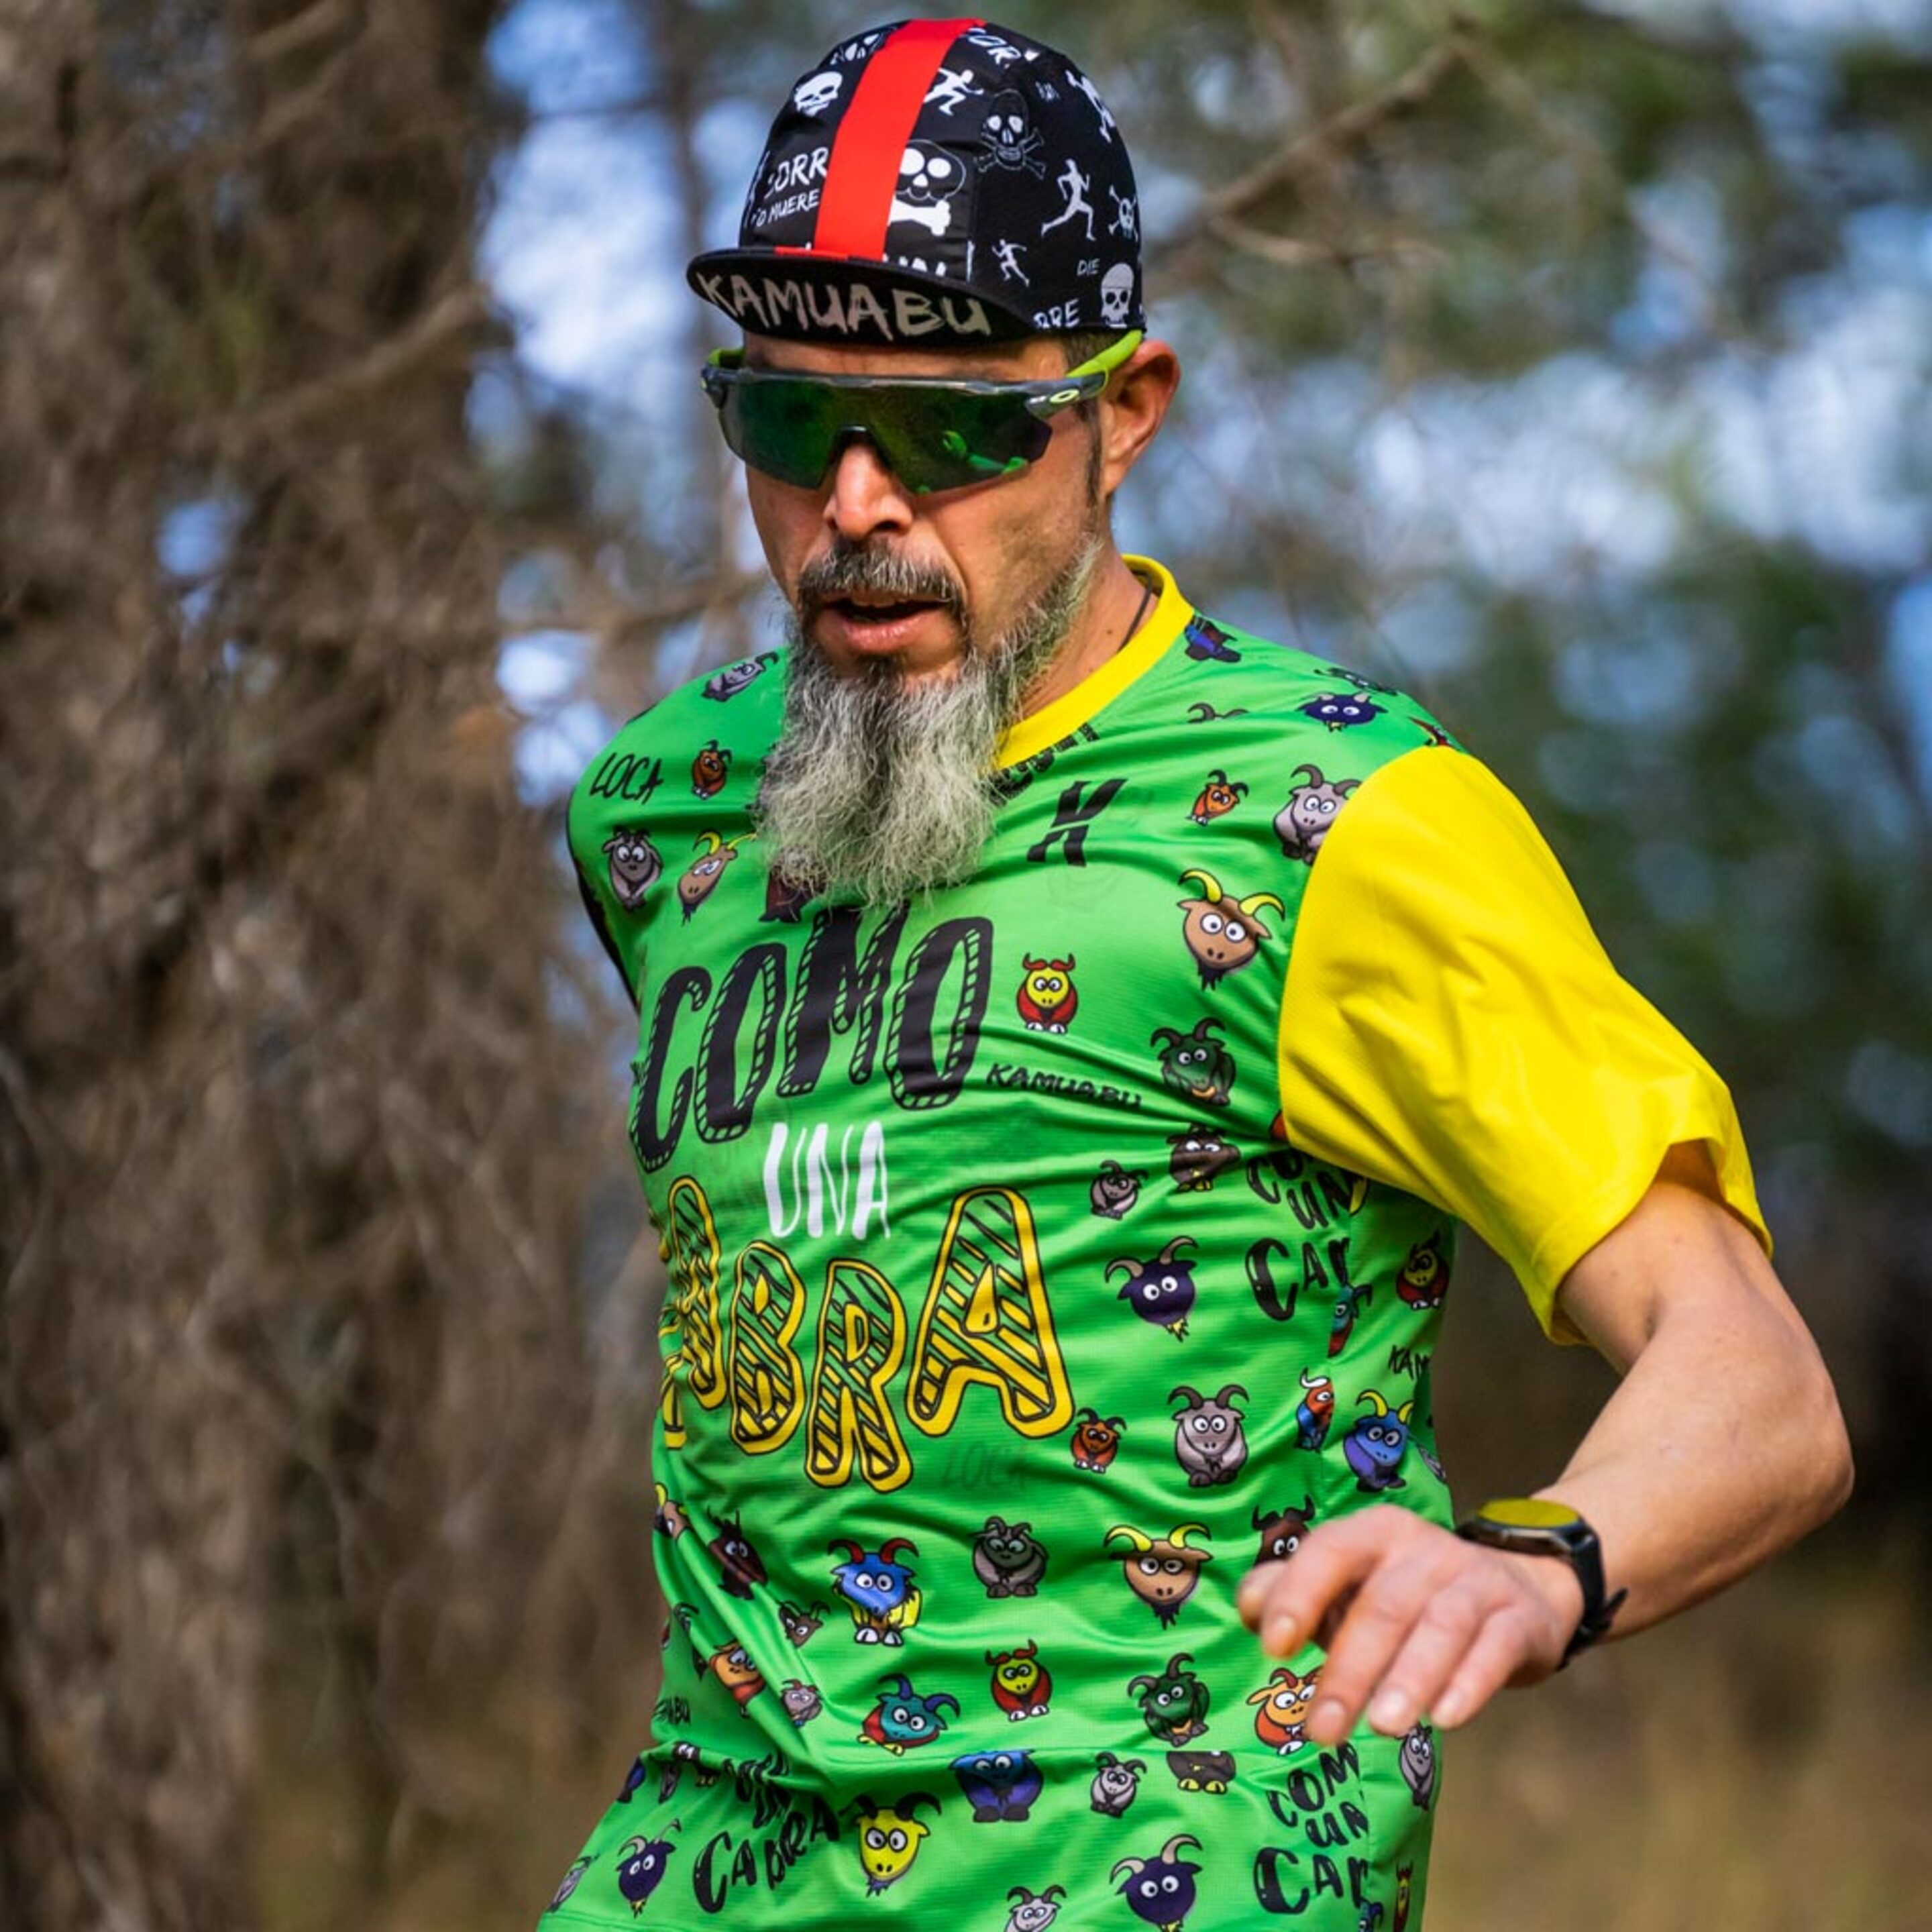 Camiseta Elite Fit Para Corrida E Trail #comounacabra Green - Man